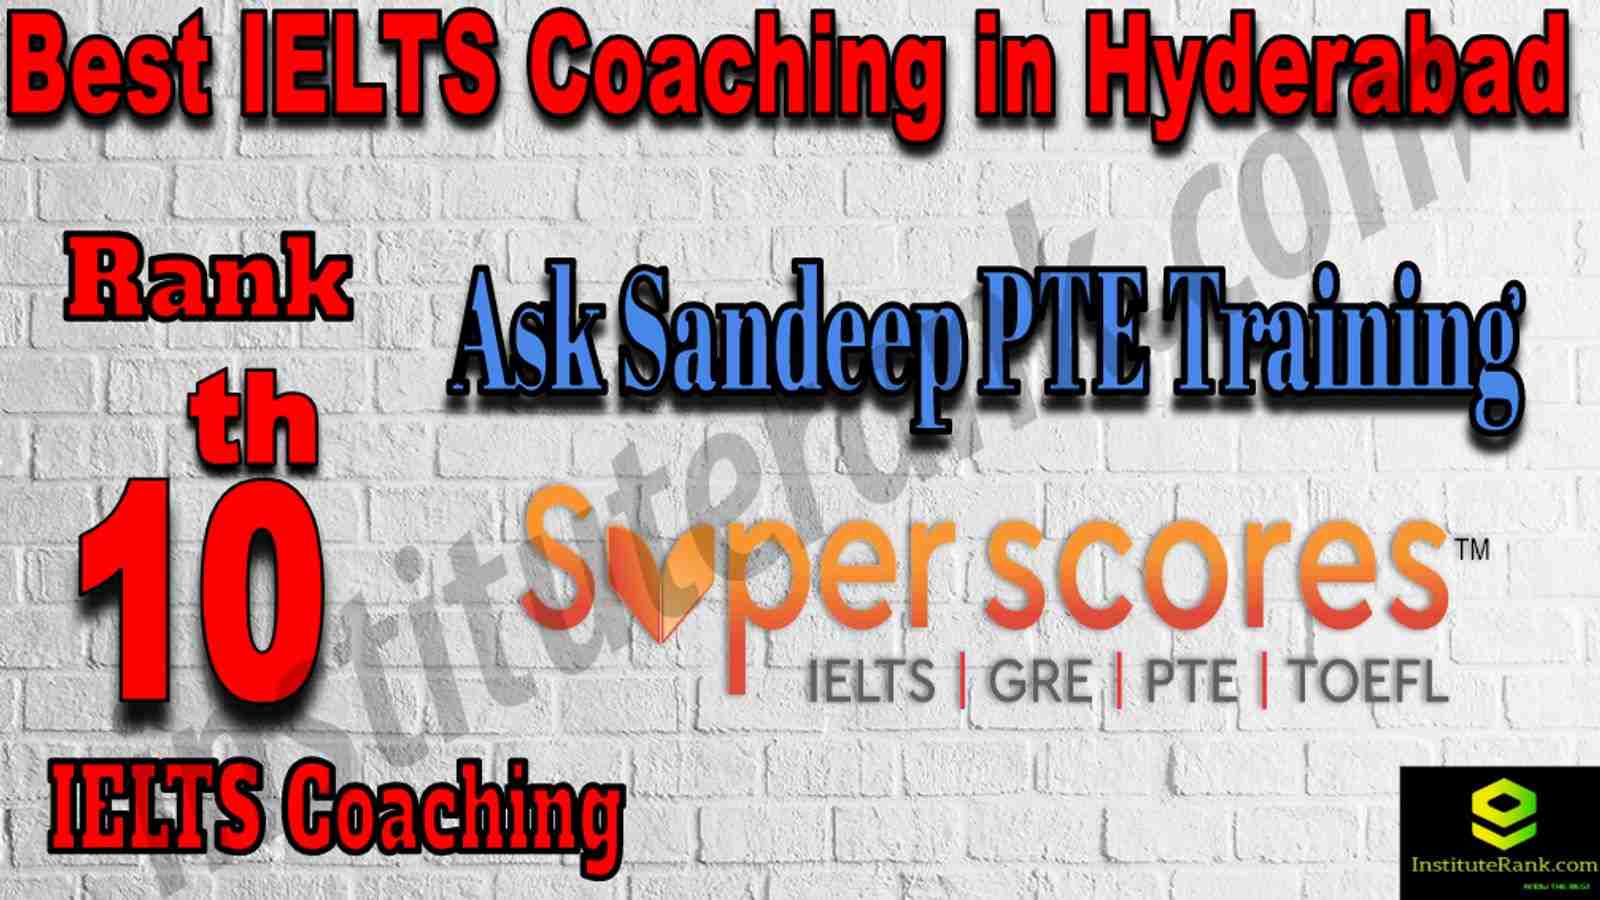 10th Best IELTS Coaching in Hyderabad